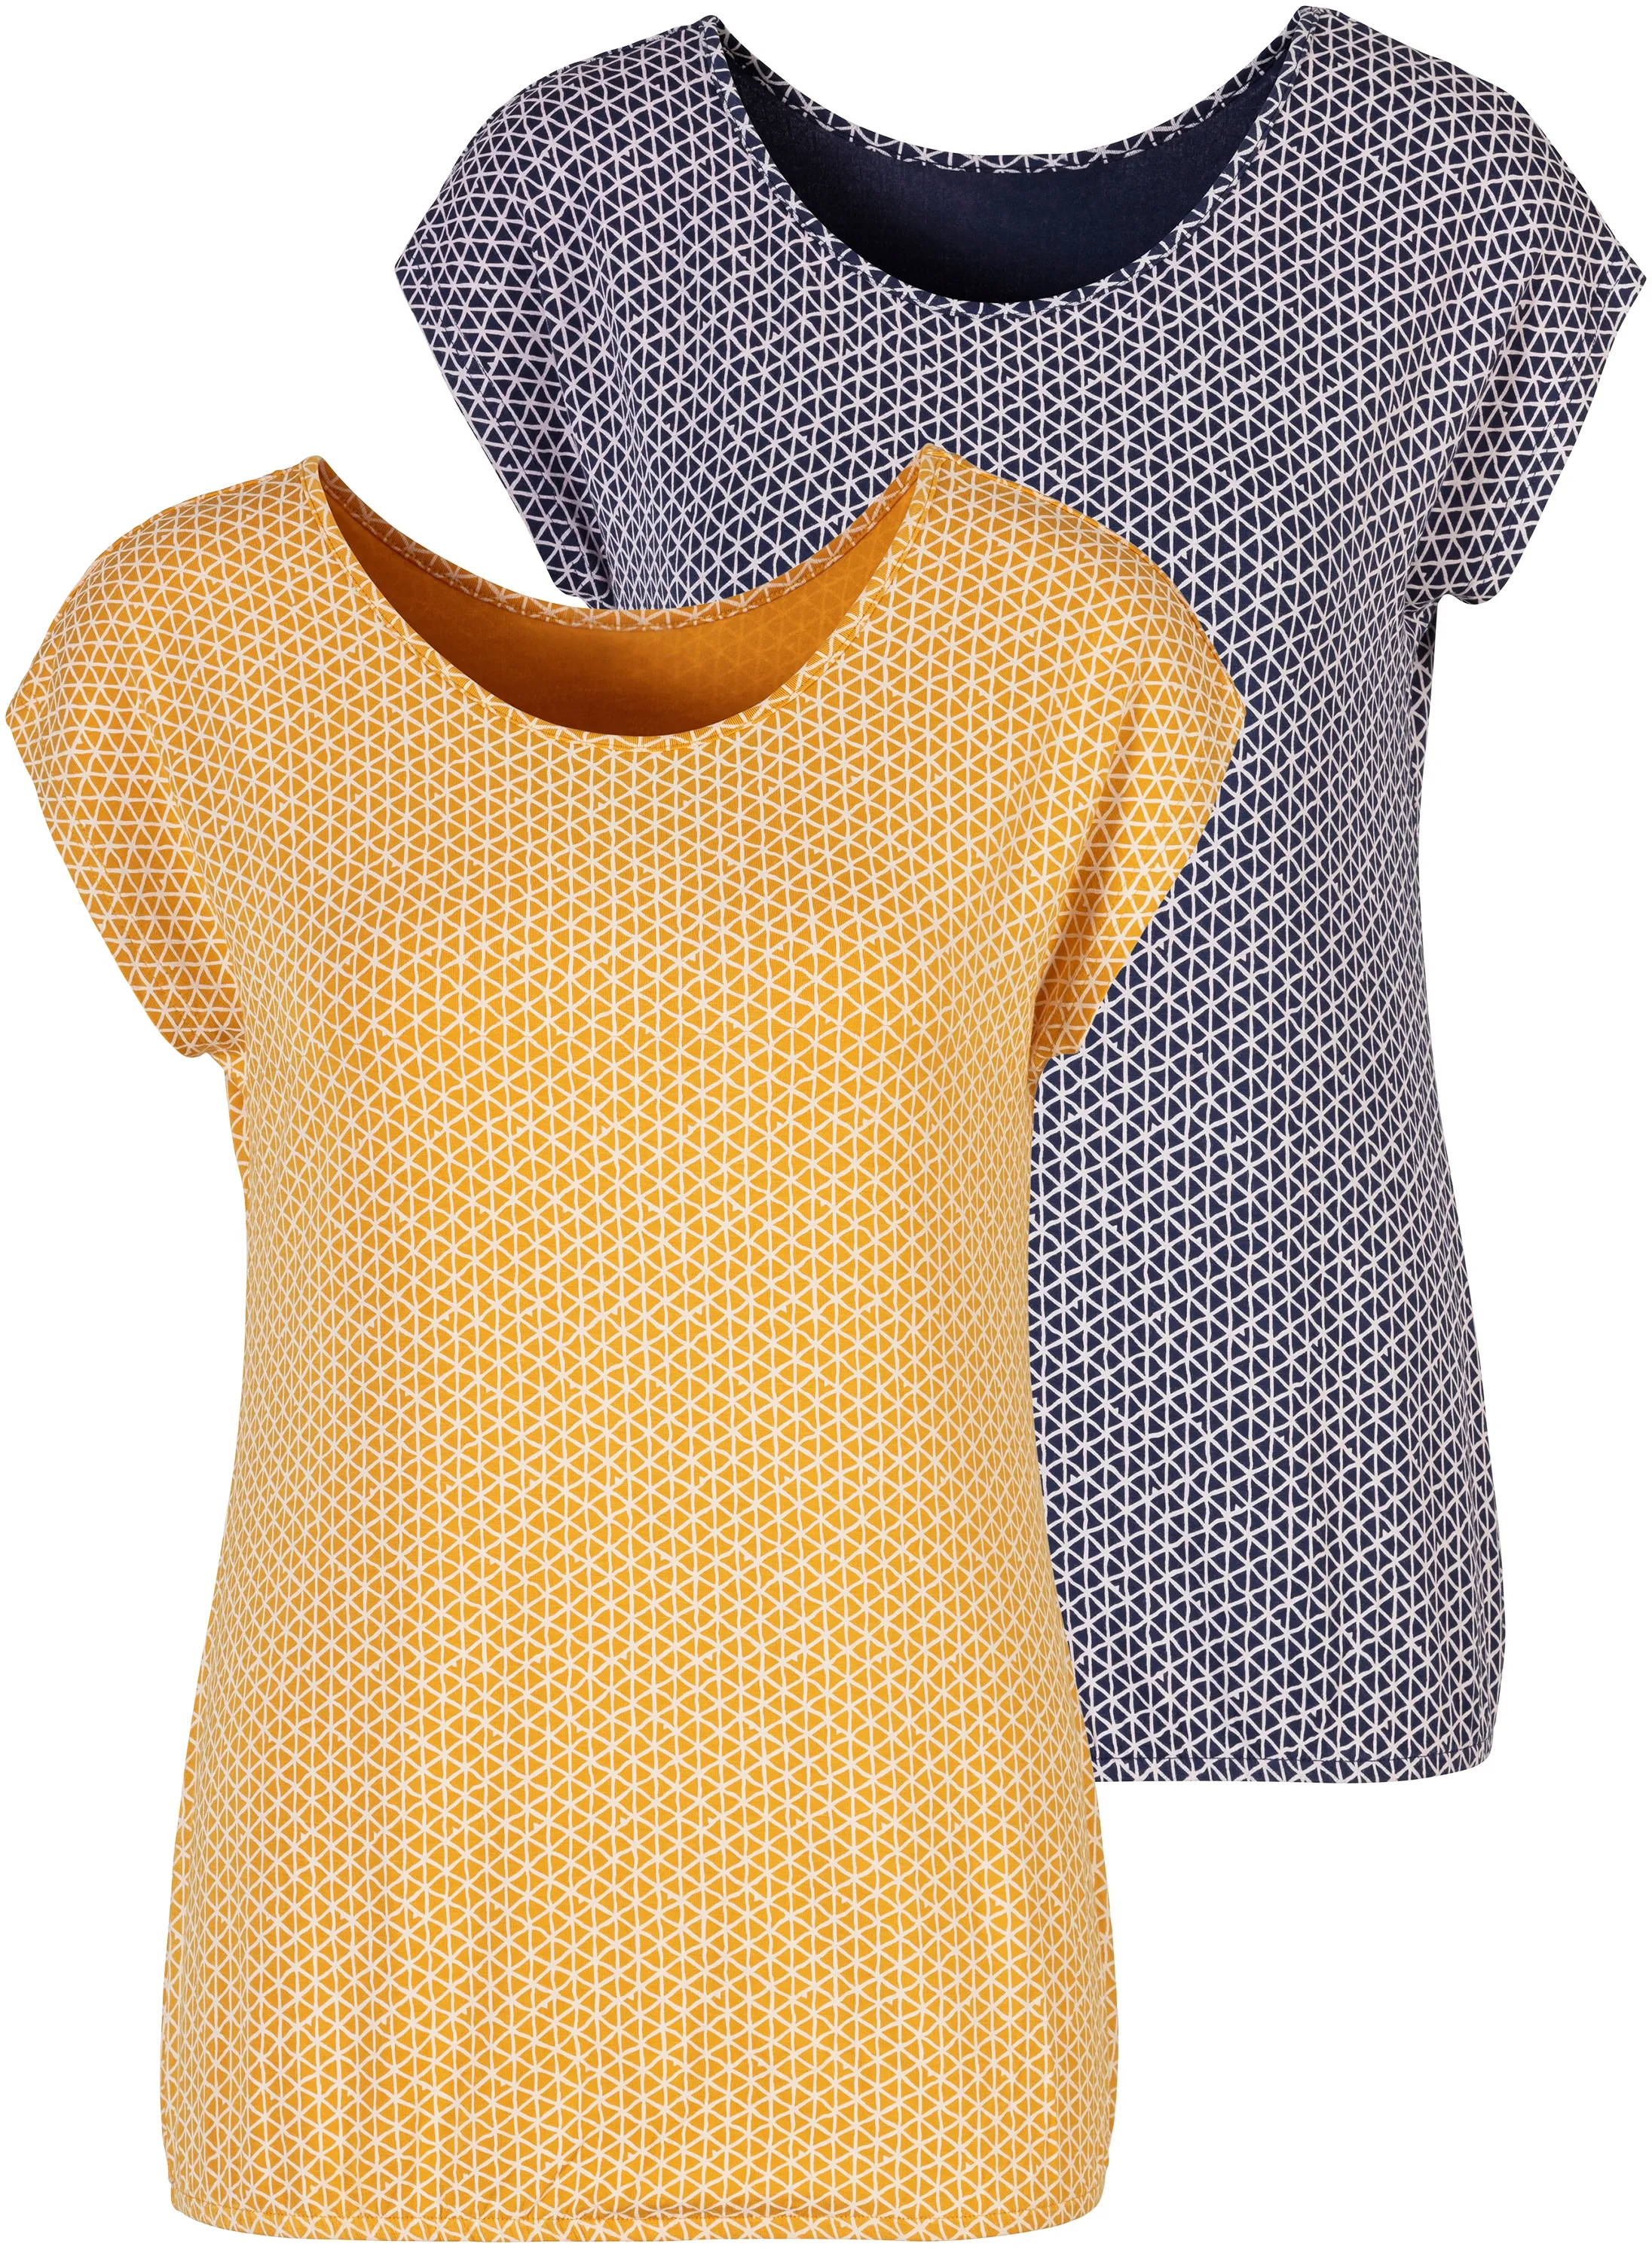 T-Shirt VIVANCE Gr. 40/42, bunt (gelb, blau) Damen Shirts Jersey mit elastischem Saum